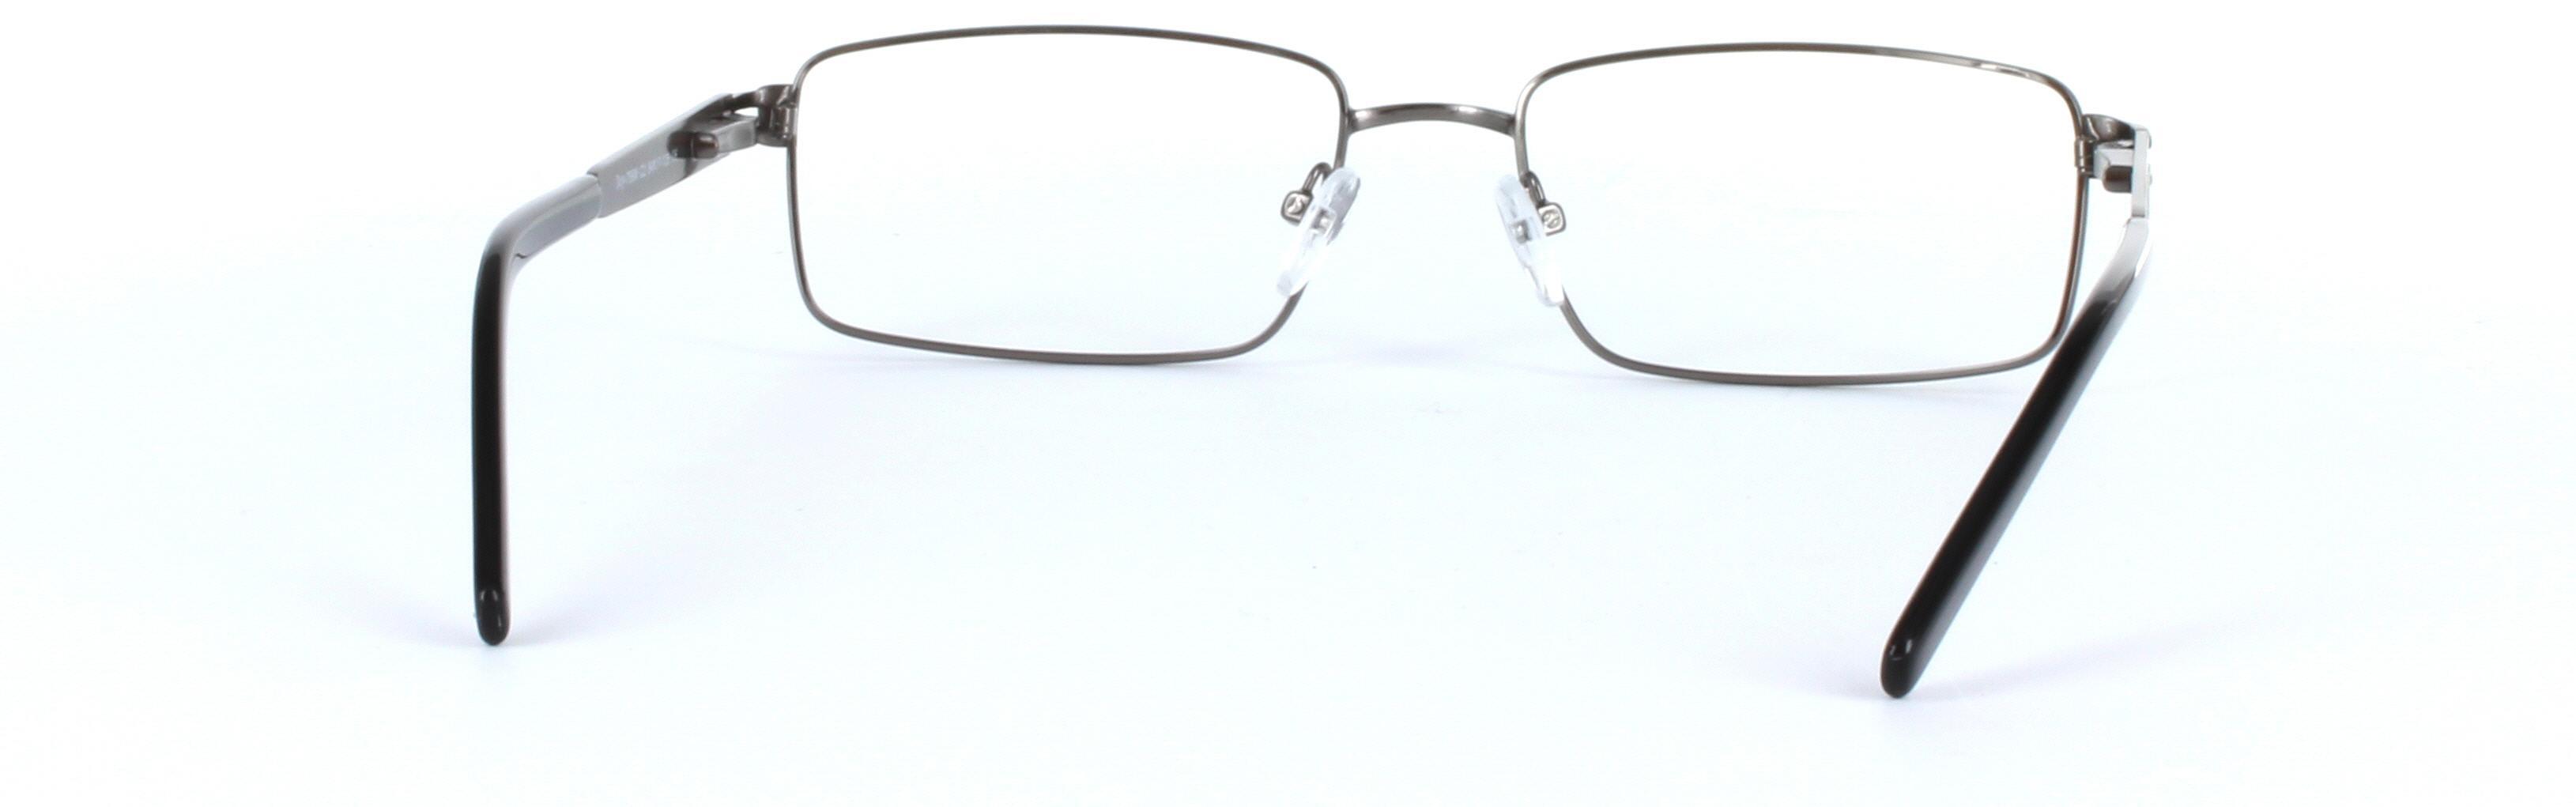 Gunmetal Full Rim Rectangular Metal Glasses Varna - Image View 3